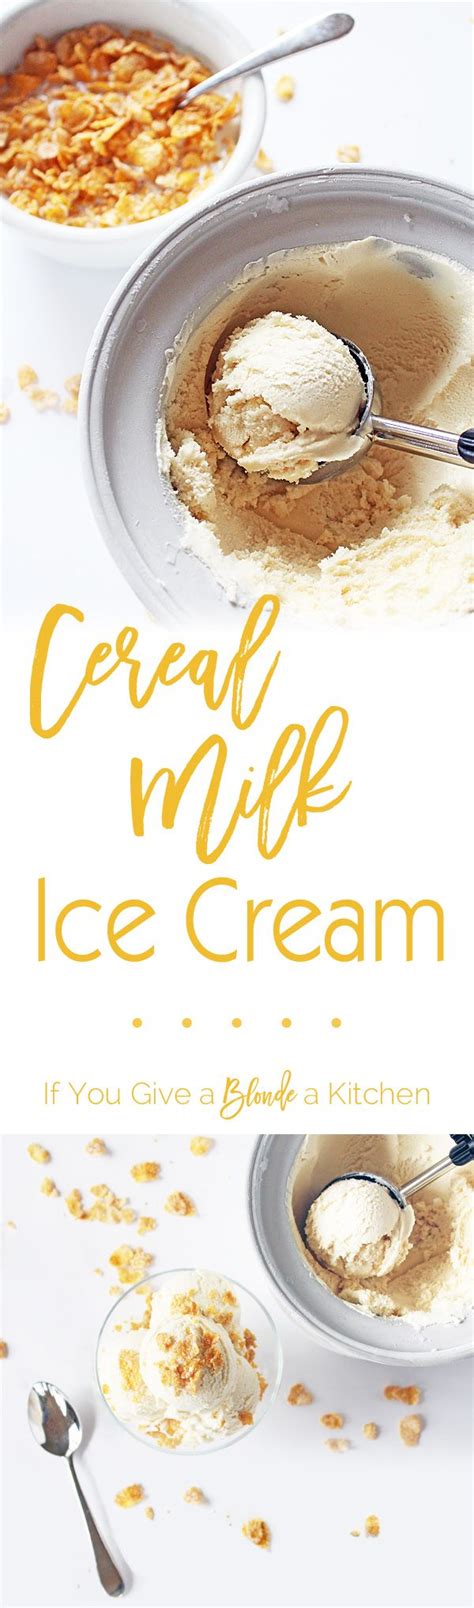 Cereal Milk Ice Cream Recipe Ice Cream Recipes